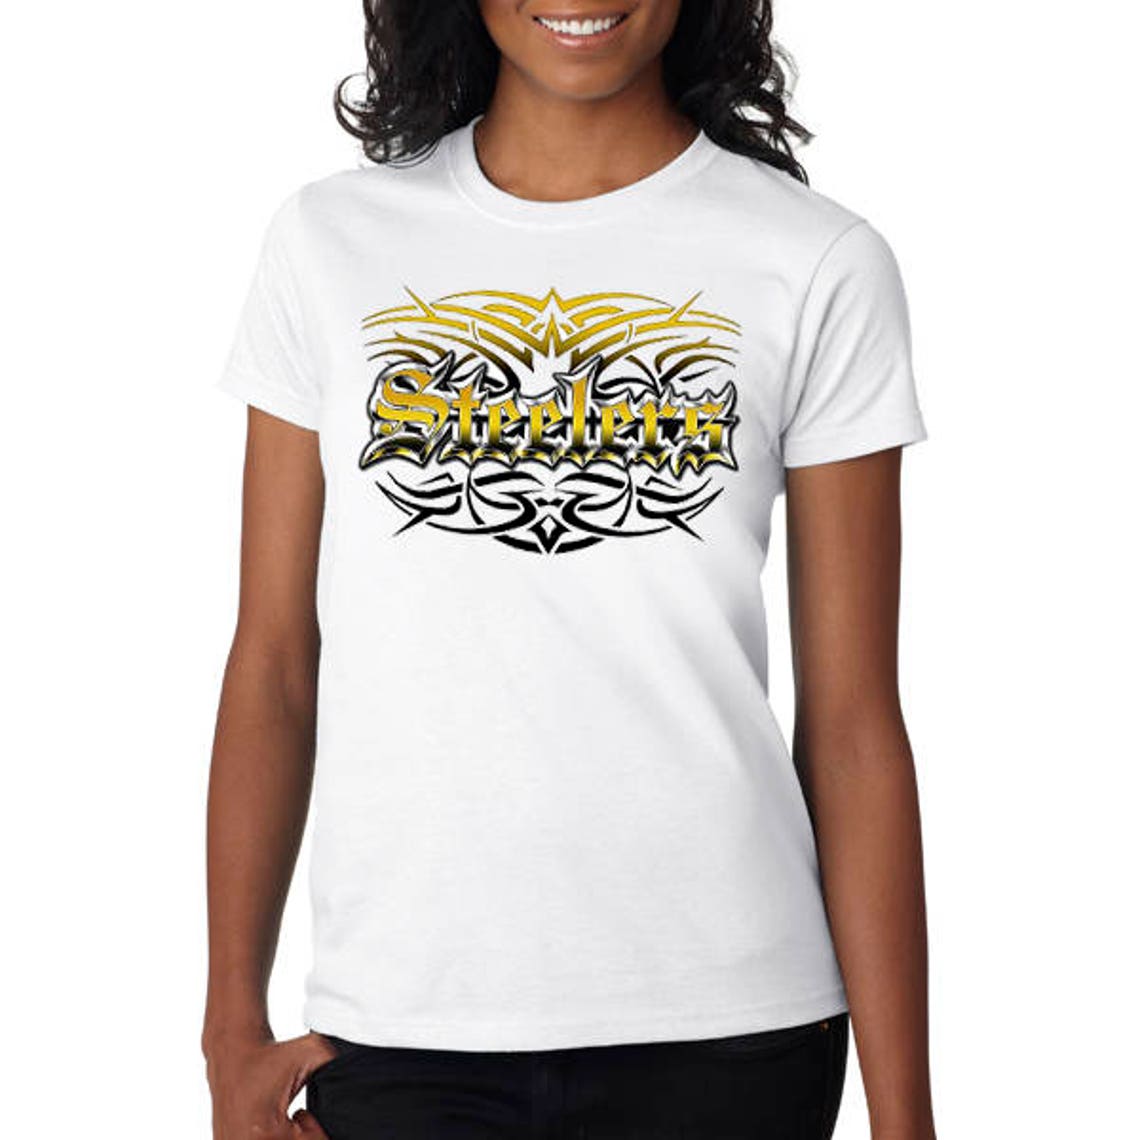 Steelers Tattoo T-shirt, Tank or Sleeveless White M L XL 2X 3X 4X 5X ...